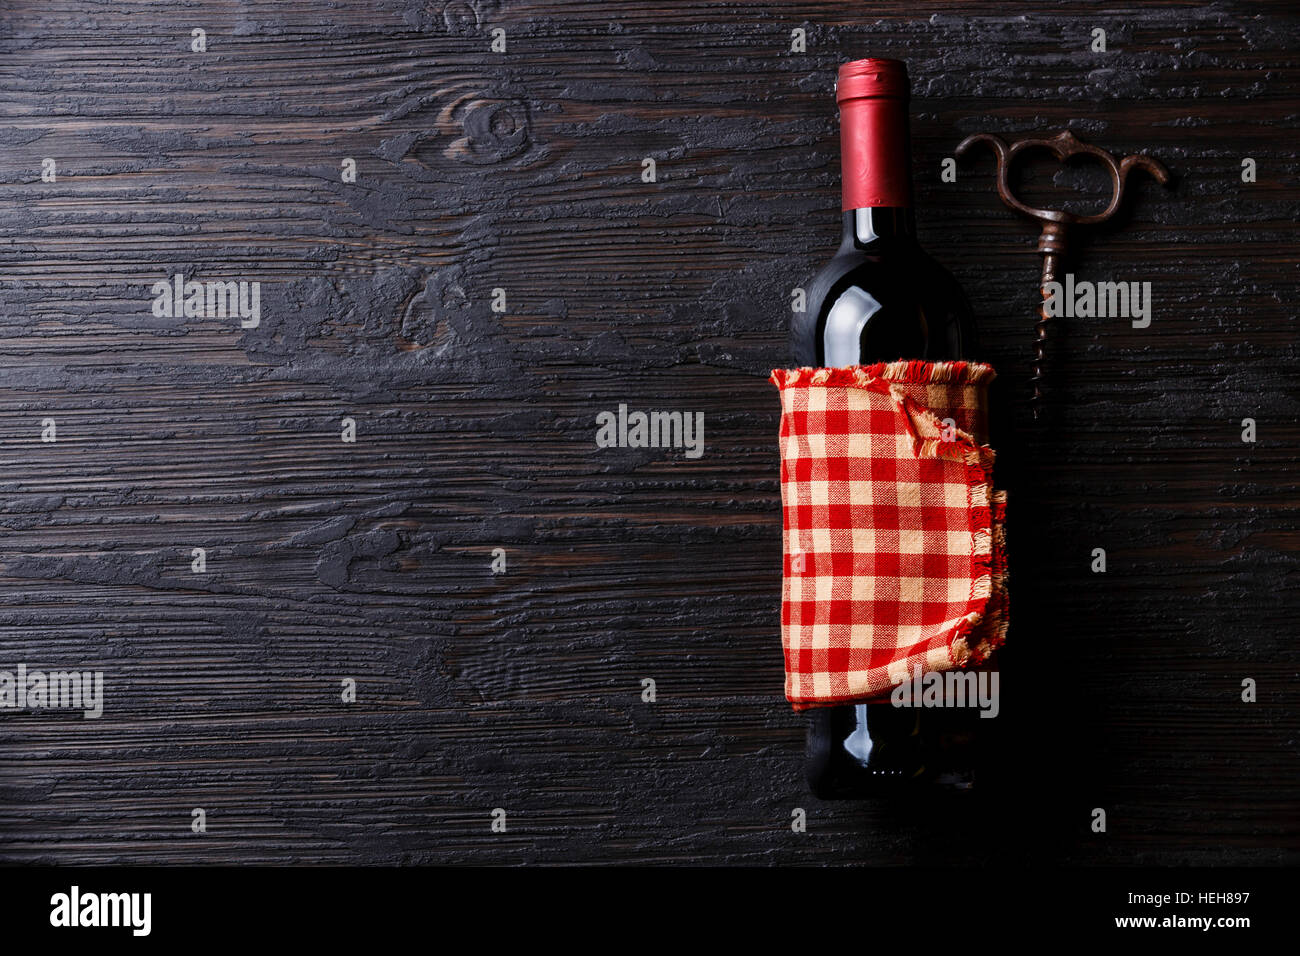 Flasche Wein und Korkenzieher auf schwarz verbrannten Holz Hintergrund Textfreiraum Stockfoto